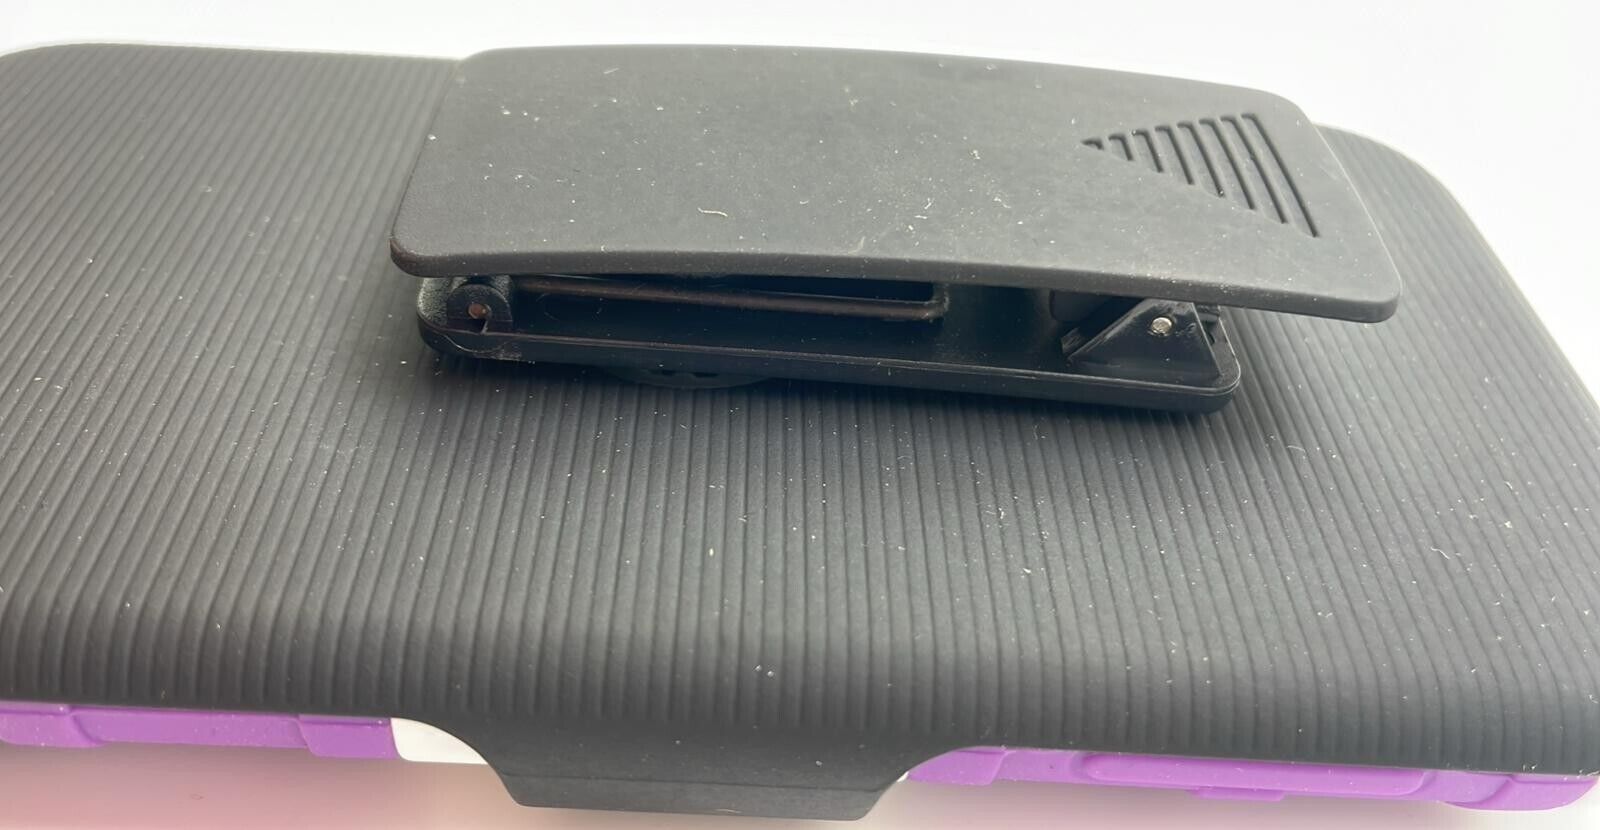 Sonne Holster Case with Kickstand for HTC Desire 510, White/Purple Sonne - фотография #5